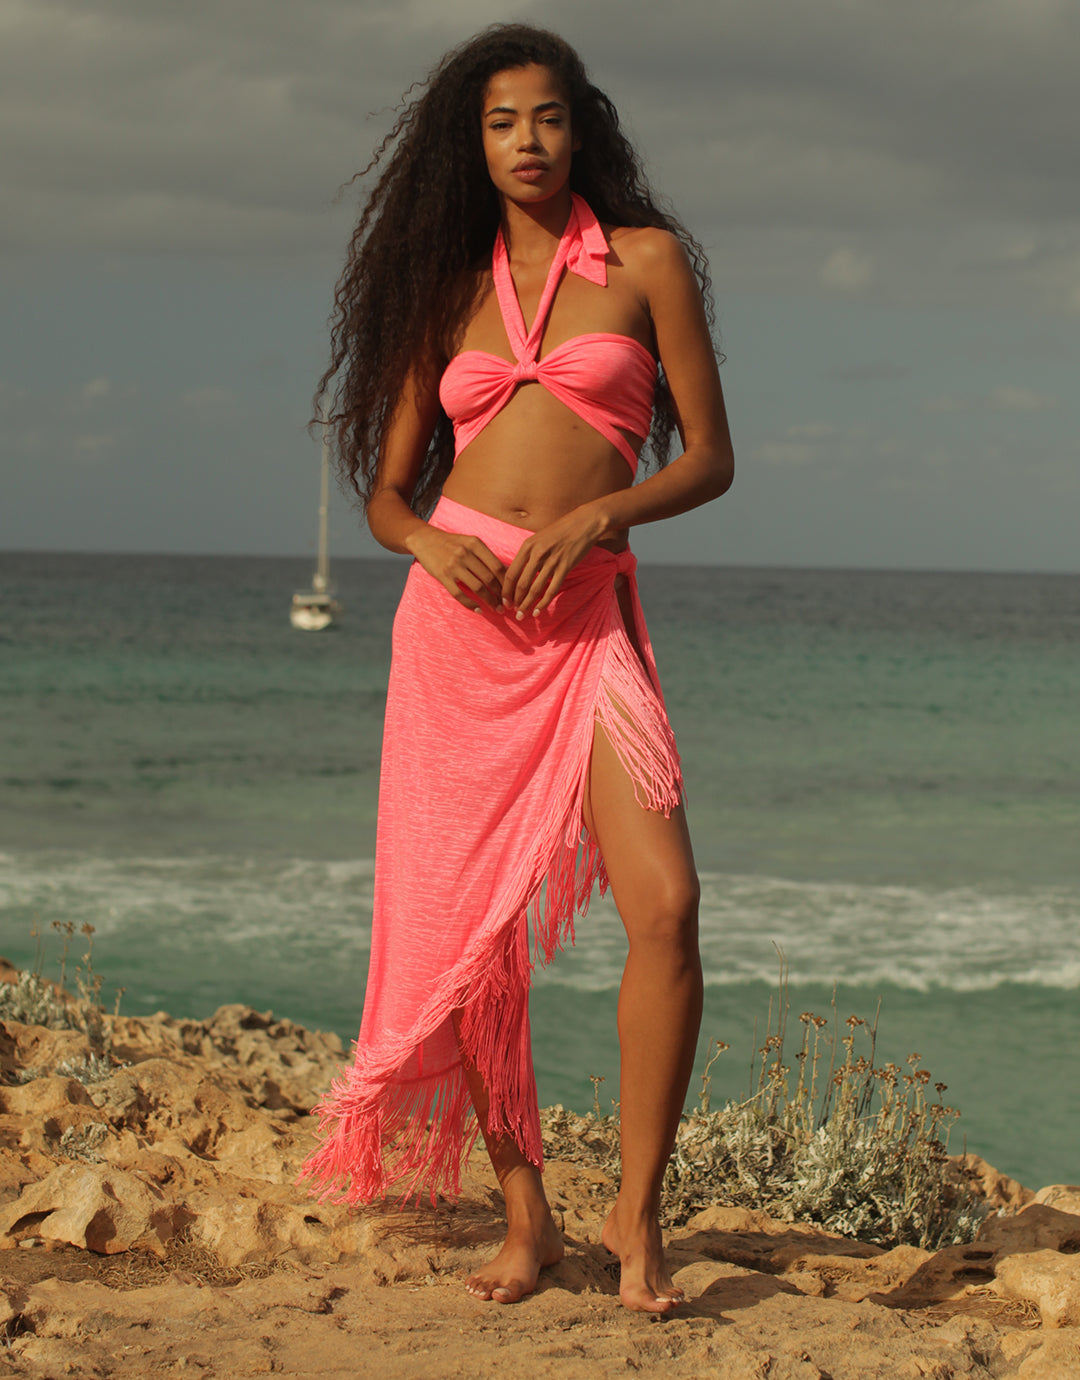 Fringed Sarong Skirt - Hot Pink - Simply Beach UK